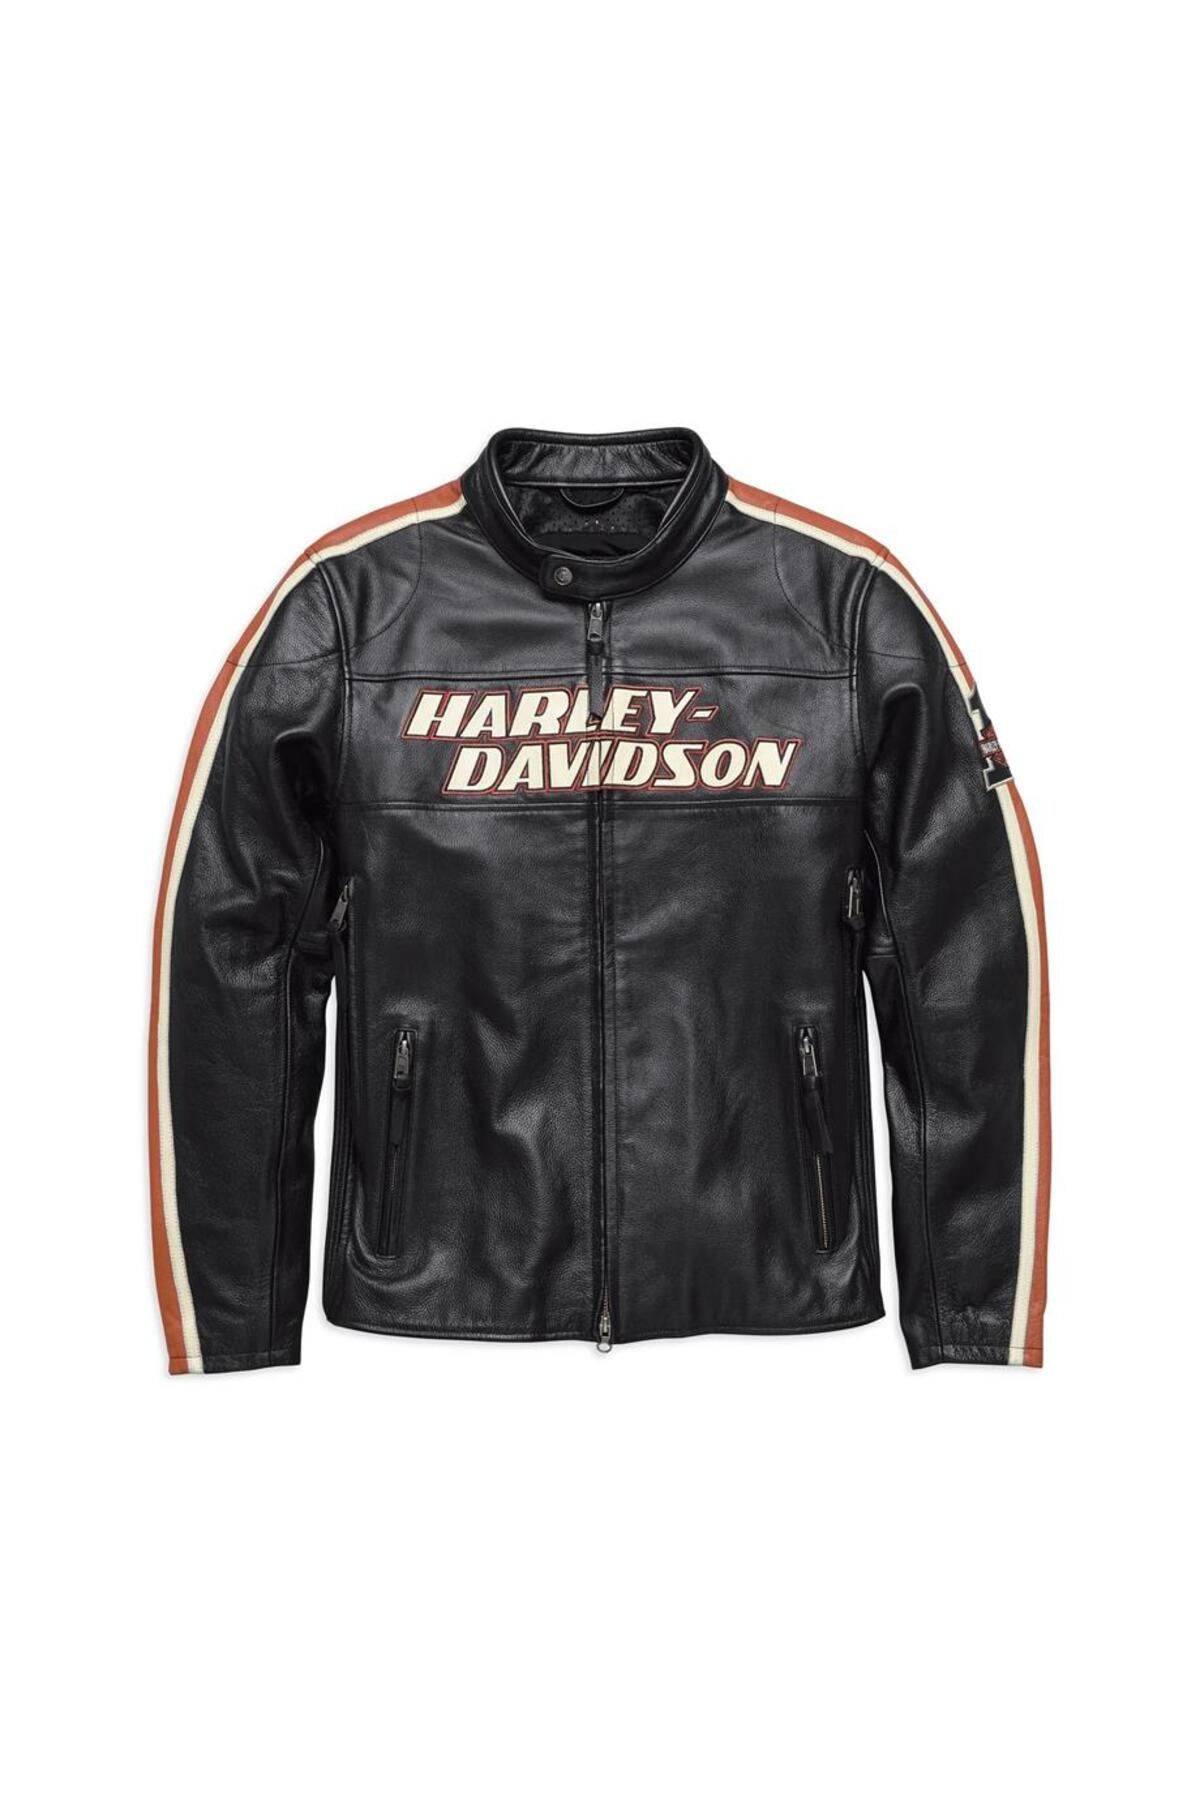 Harley Davidson Harley-Davidson Men's Torque Leather Jacket